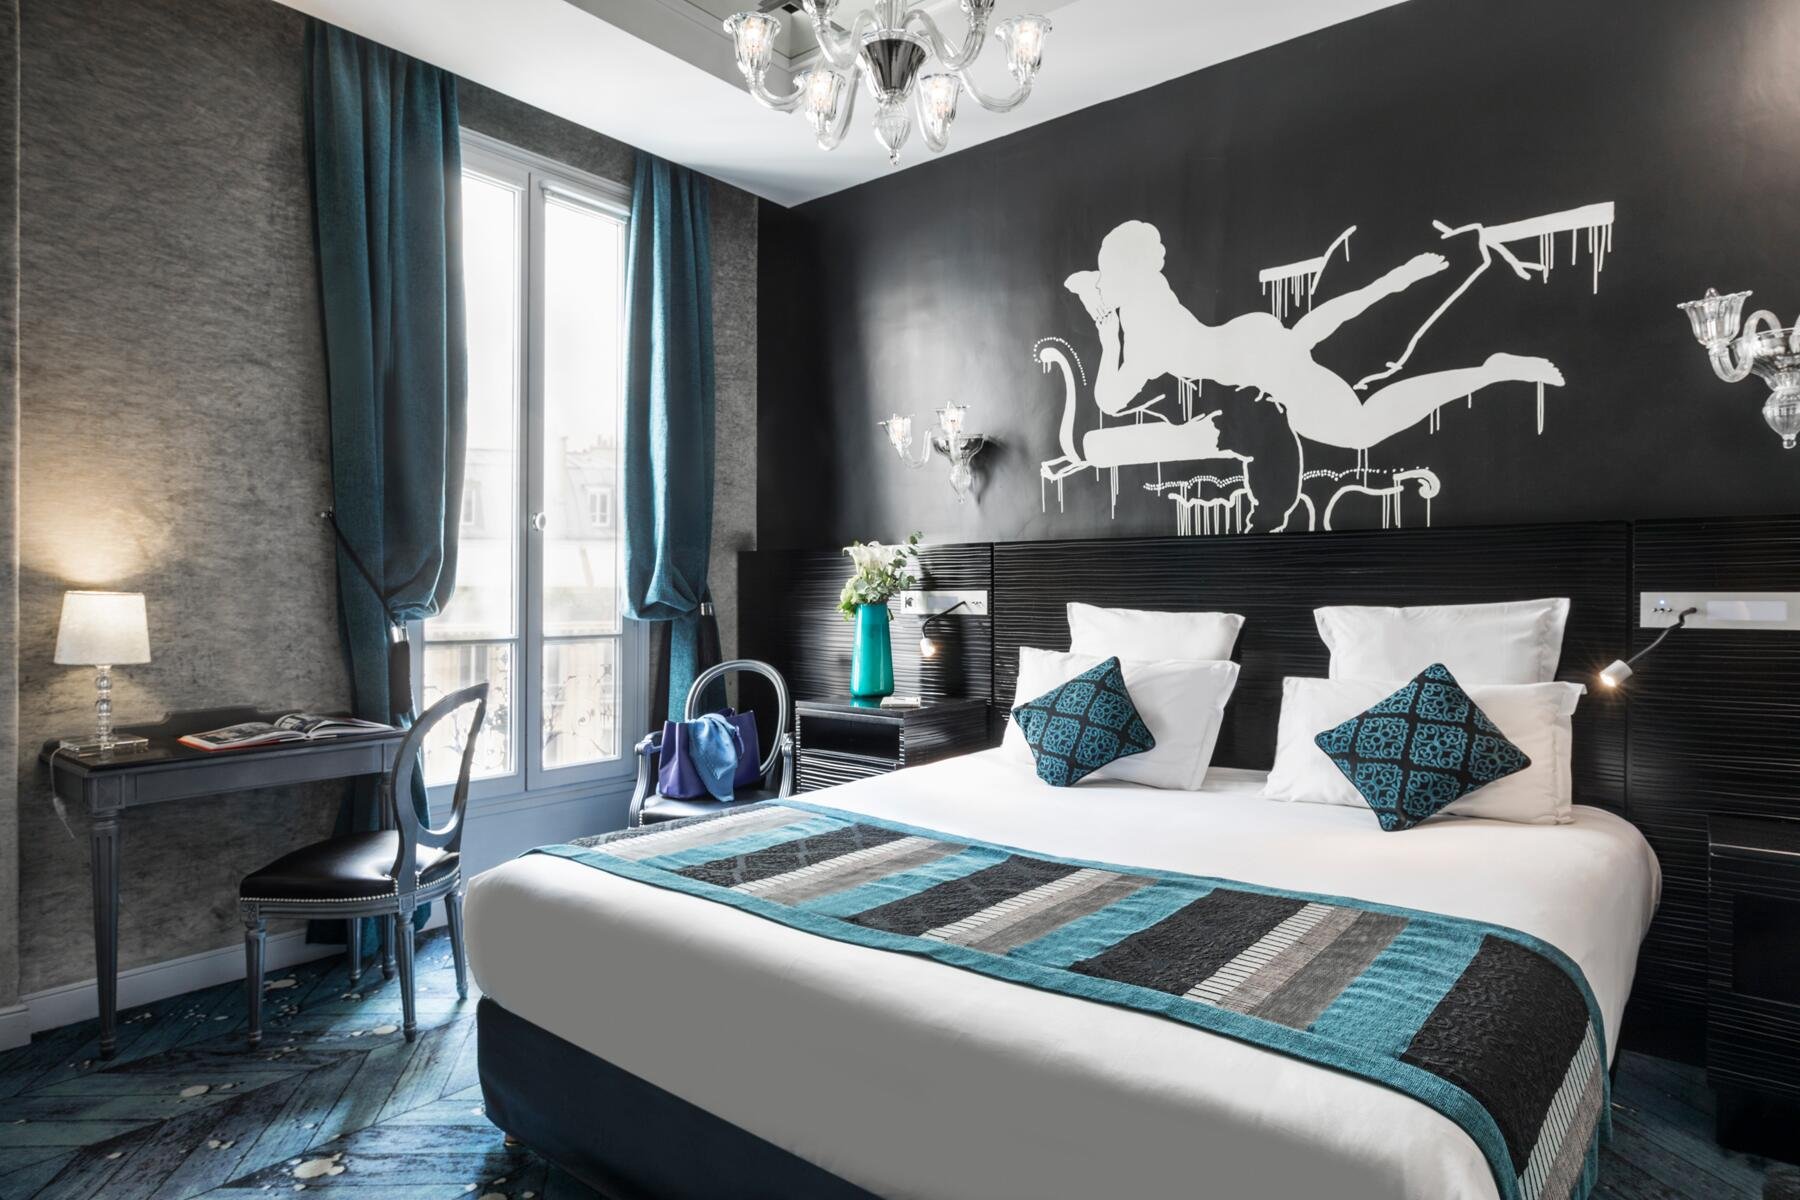 Maison Albar Hotels Le Champs-Elysées | Romantic stay in Paris